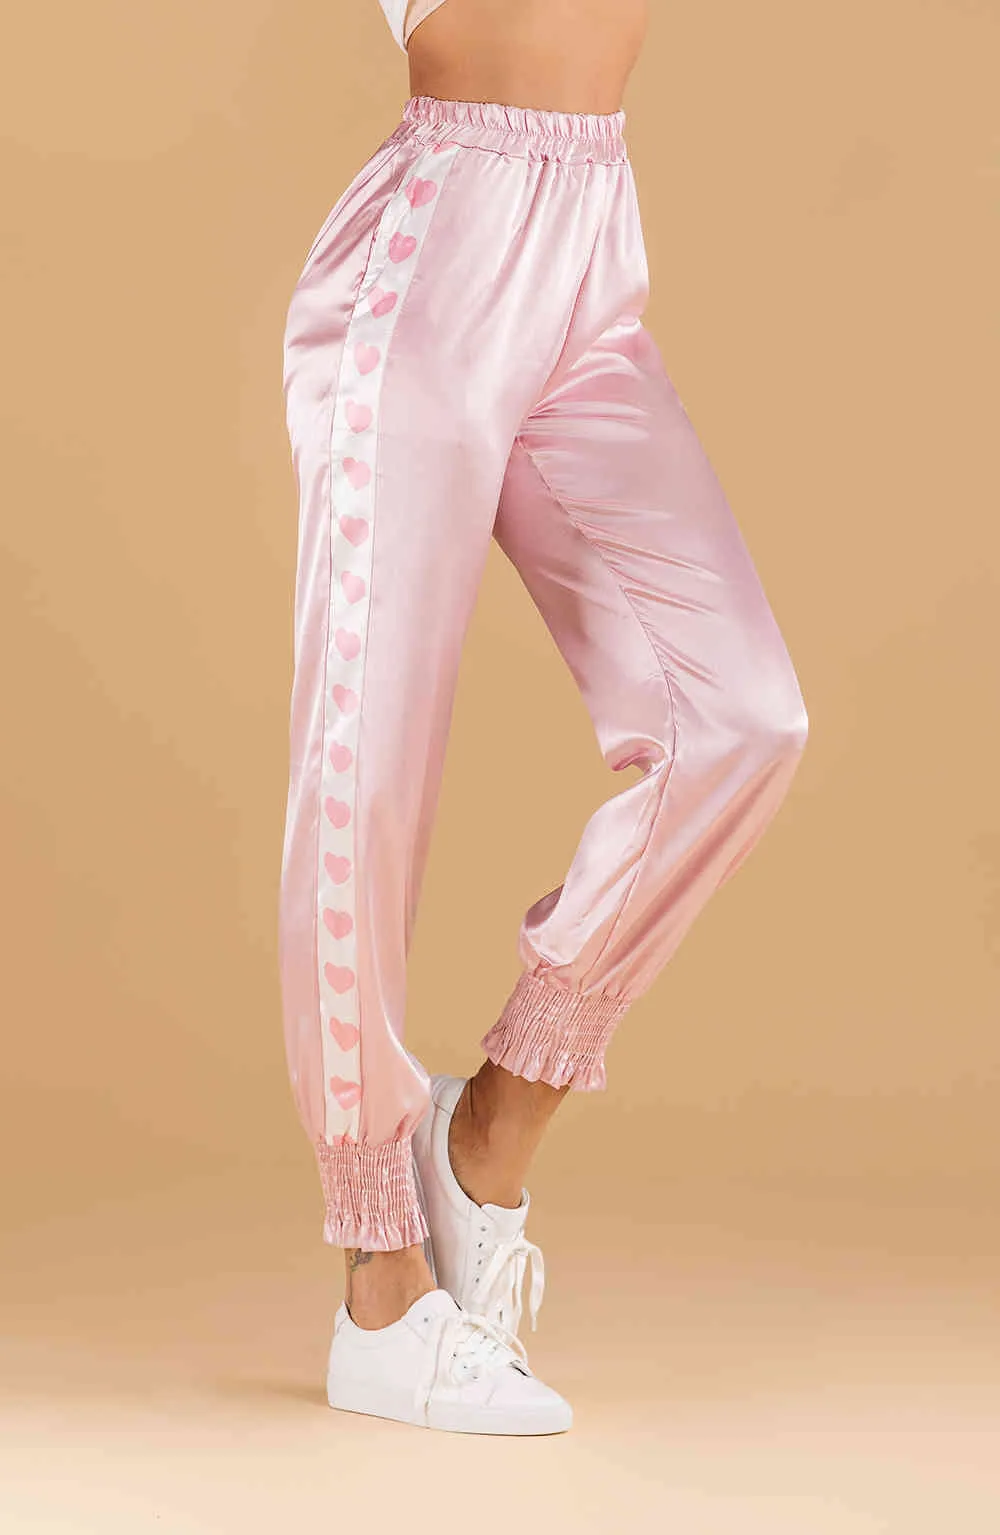 Brillant côté amour motif pantalon femme printemps été haute taille élastique rose pantalon cargo fenale 5E205 210427